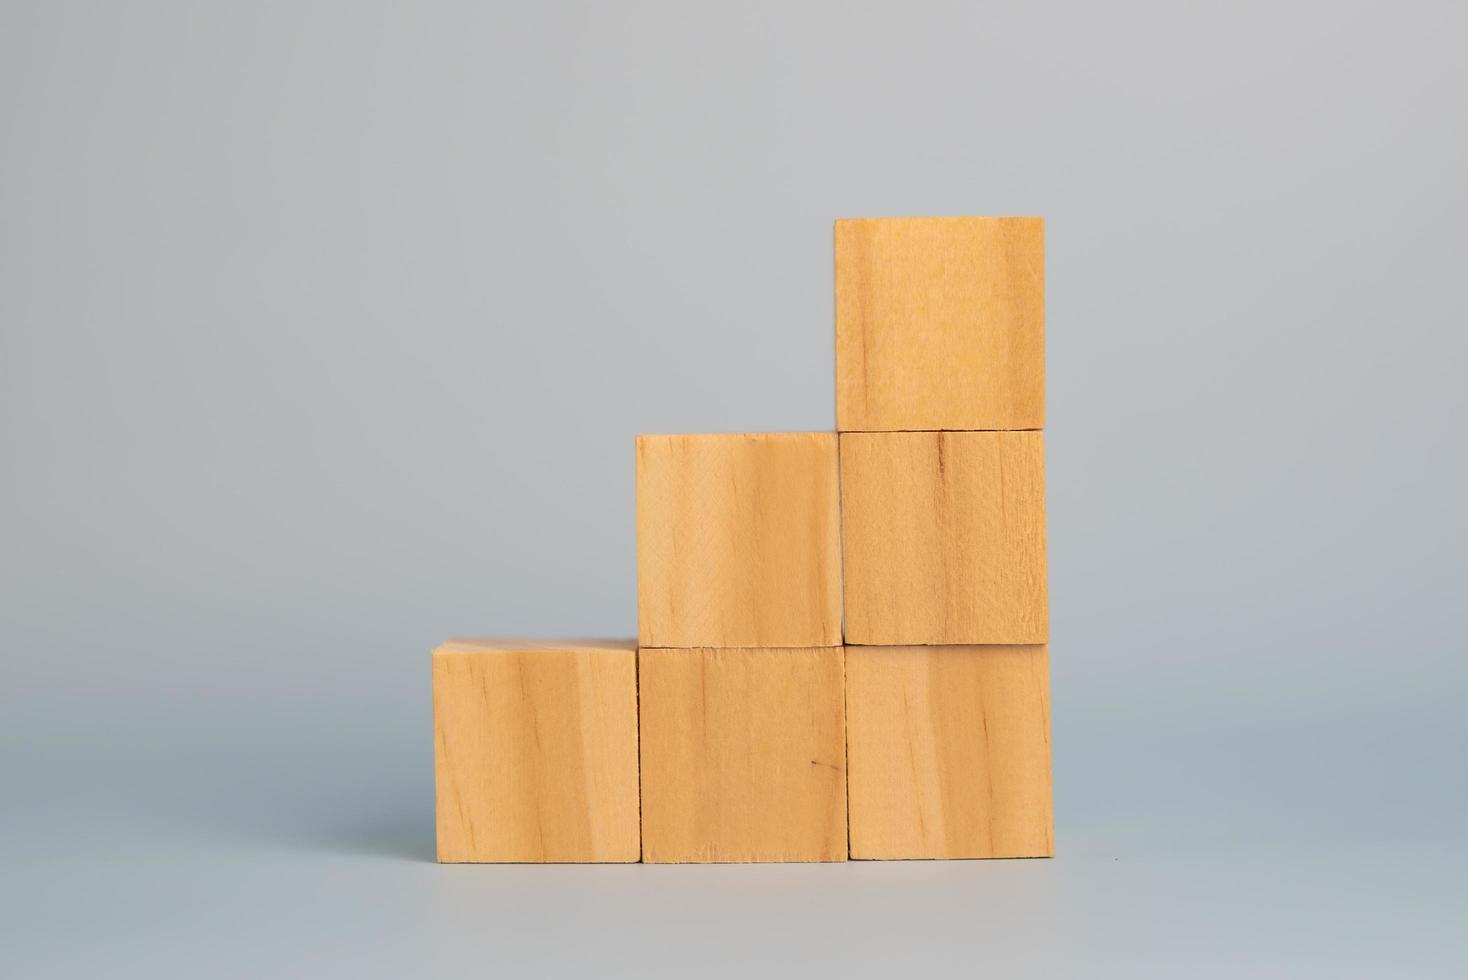 mano que sostiene el bloque de madera del cubo en blanco en el fondo. copie el espacio foto